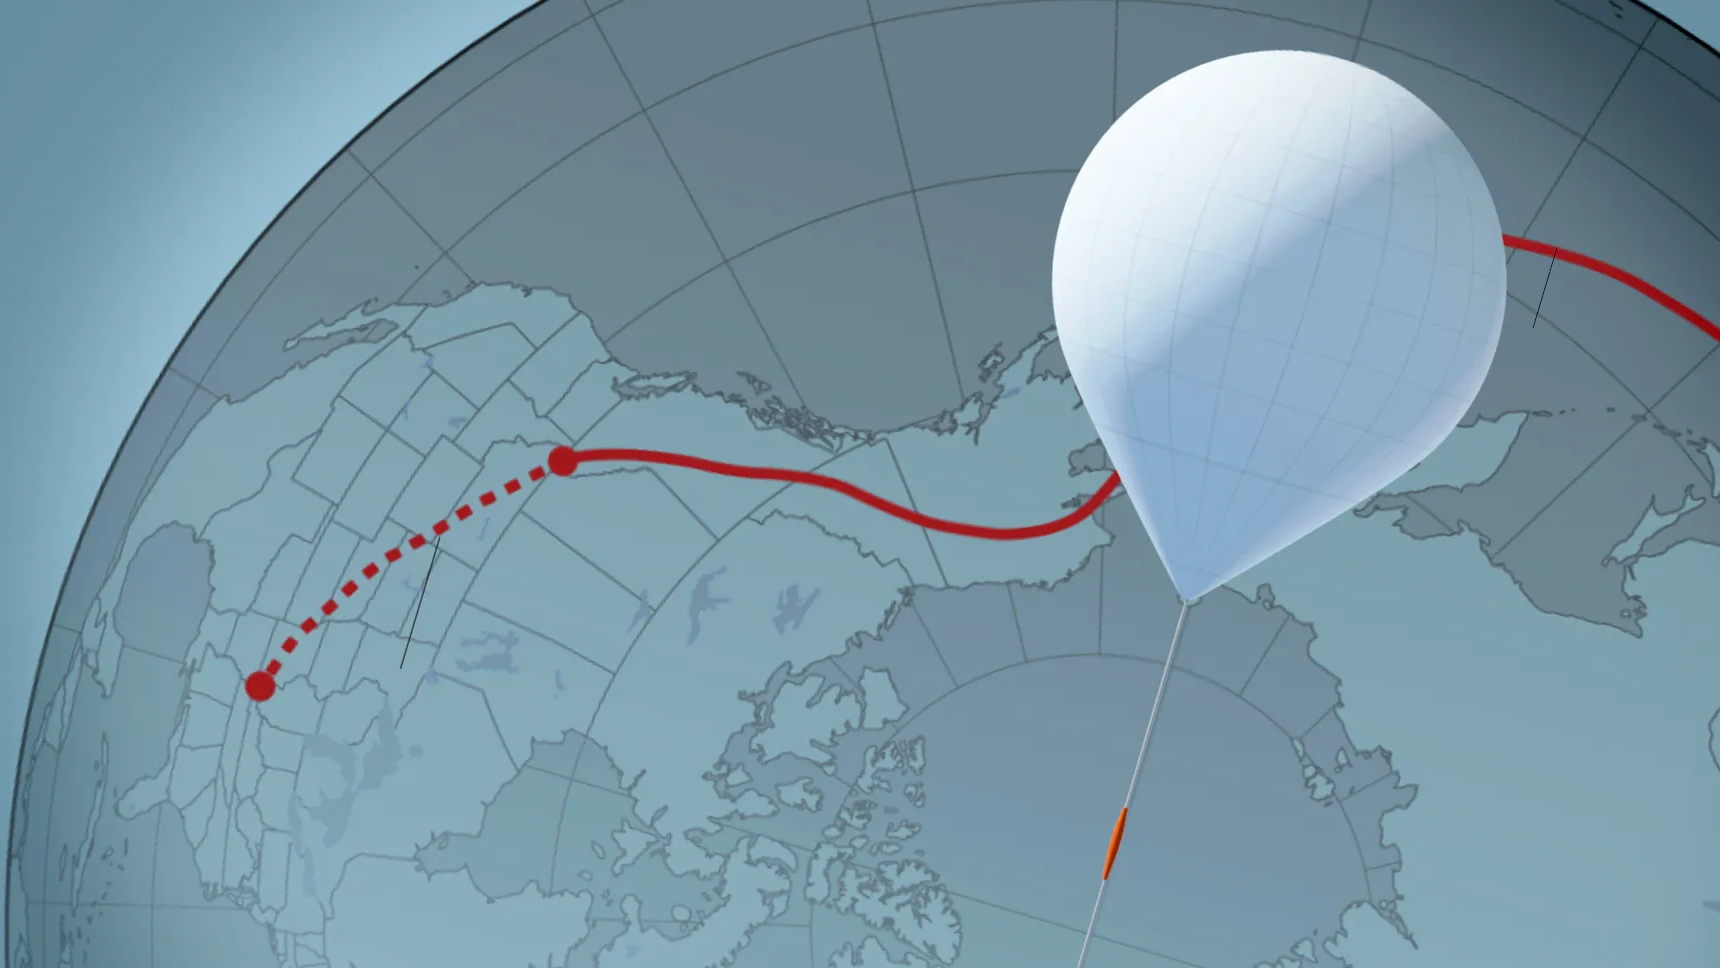 EUA X China: o curioso caso do balão-espião - Outras Palavras